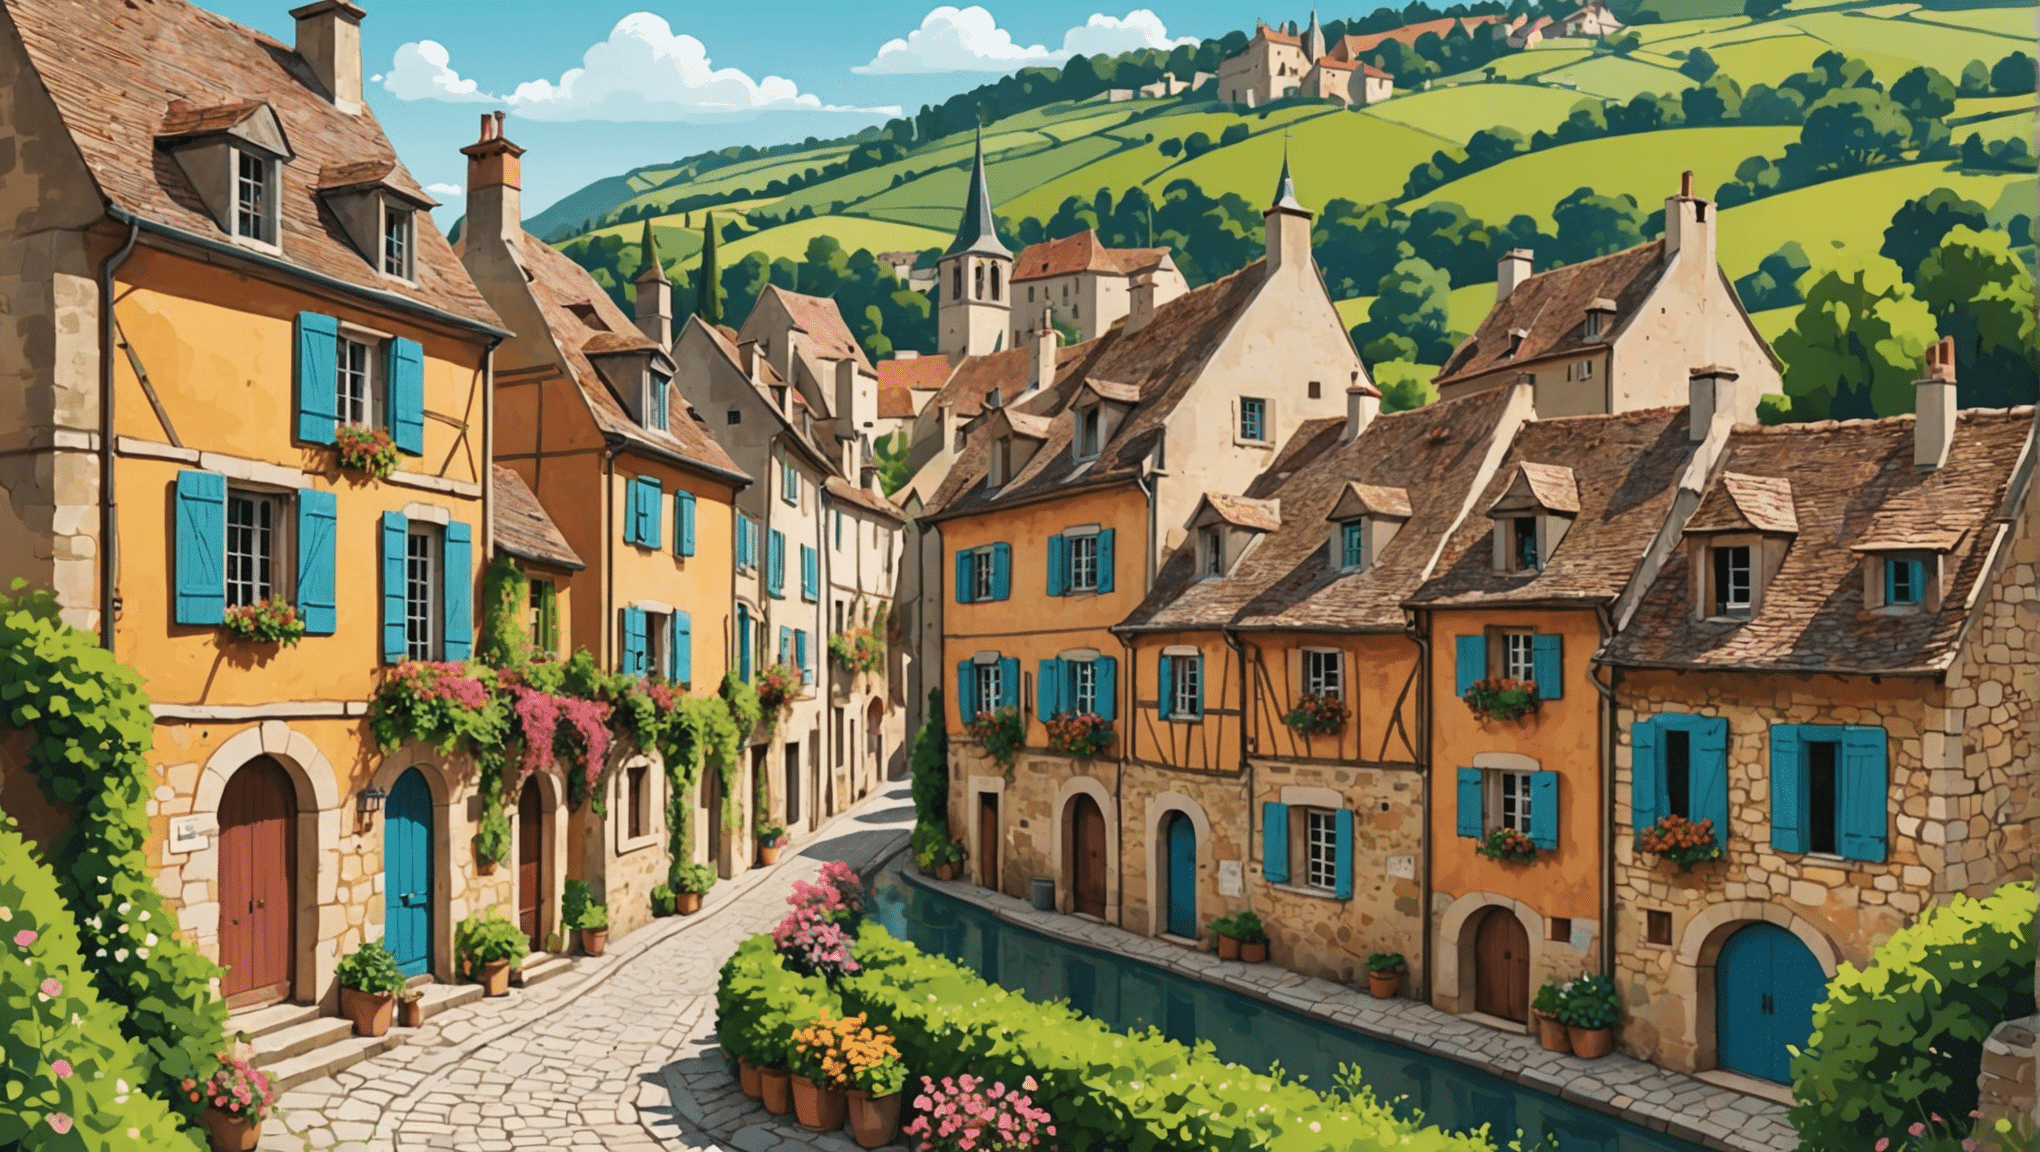 私たちの厳選したフランスで最も美しい村を発見してください。本格的で絵のように美しい休暇を過ごすために、絶対に訪れるべき宝物です。